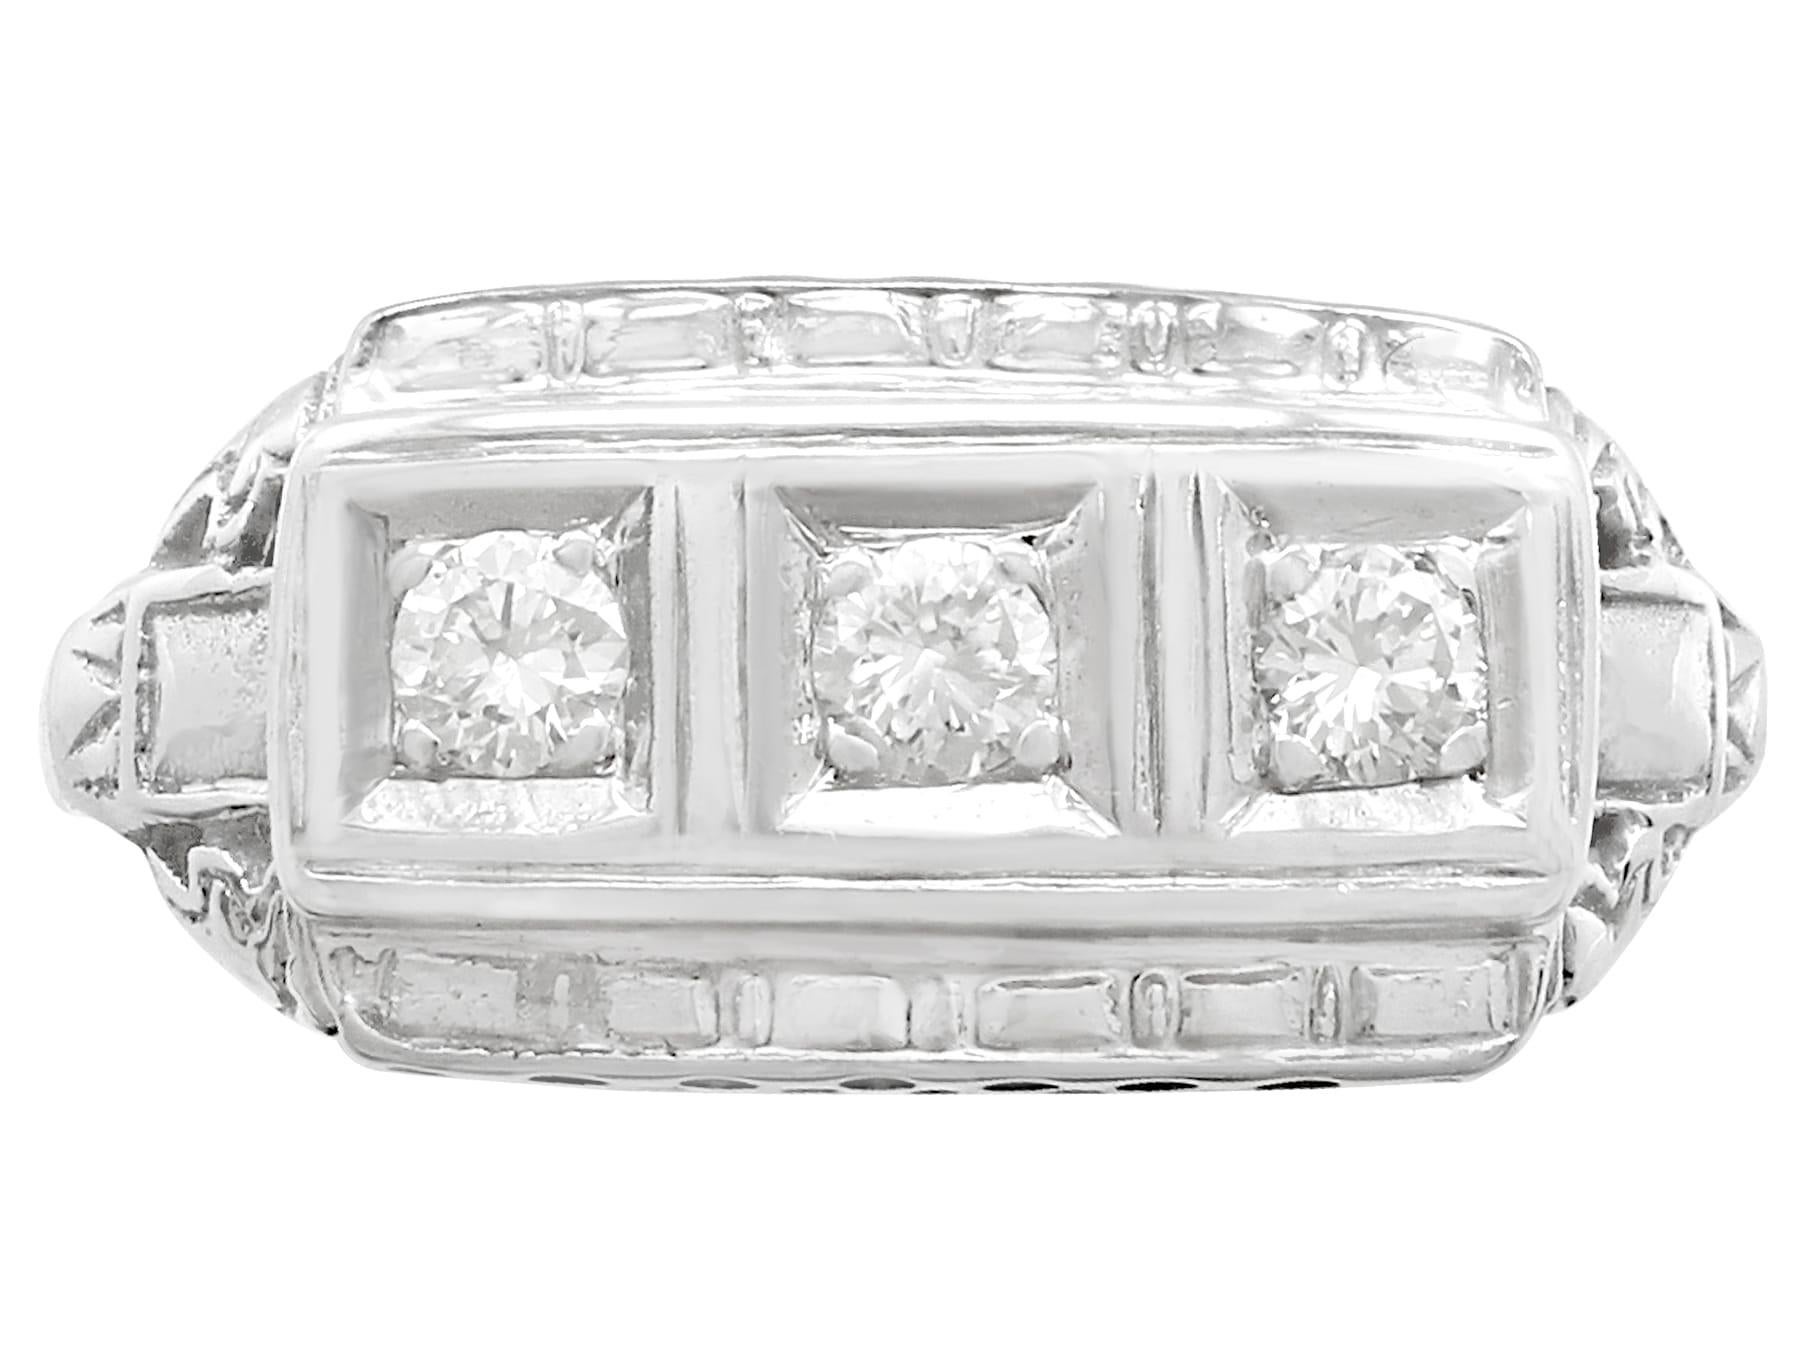 1940s princess ring